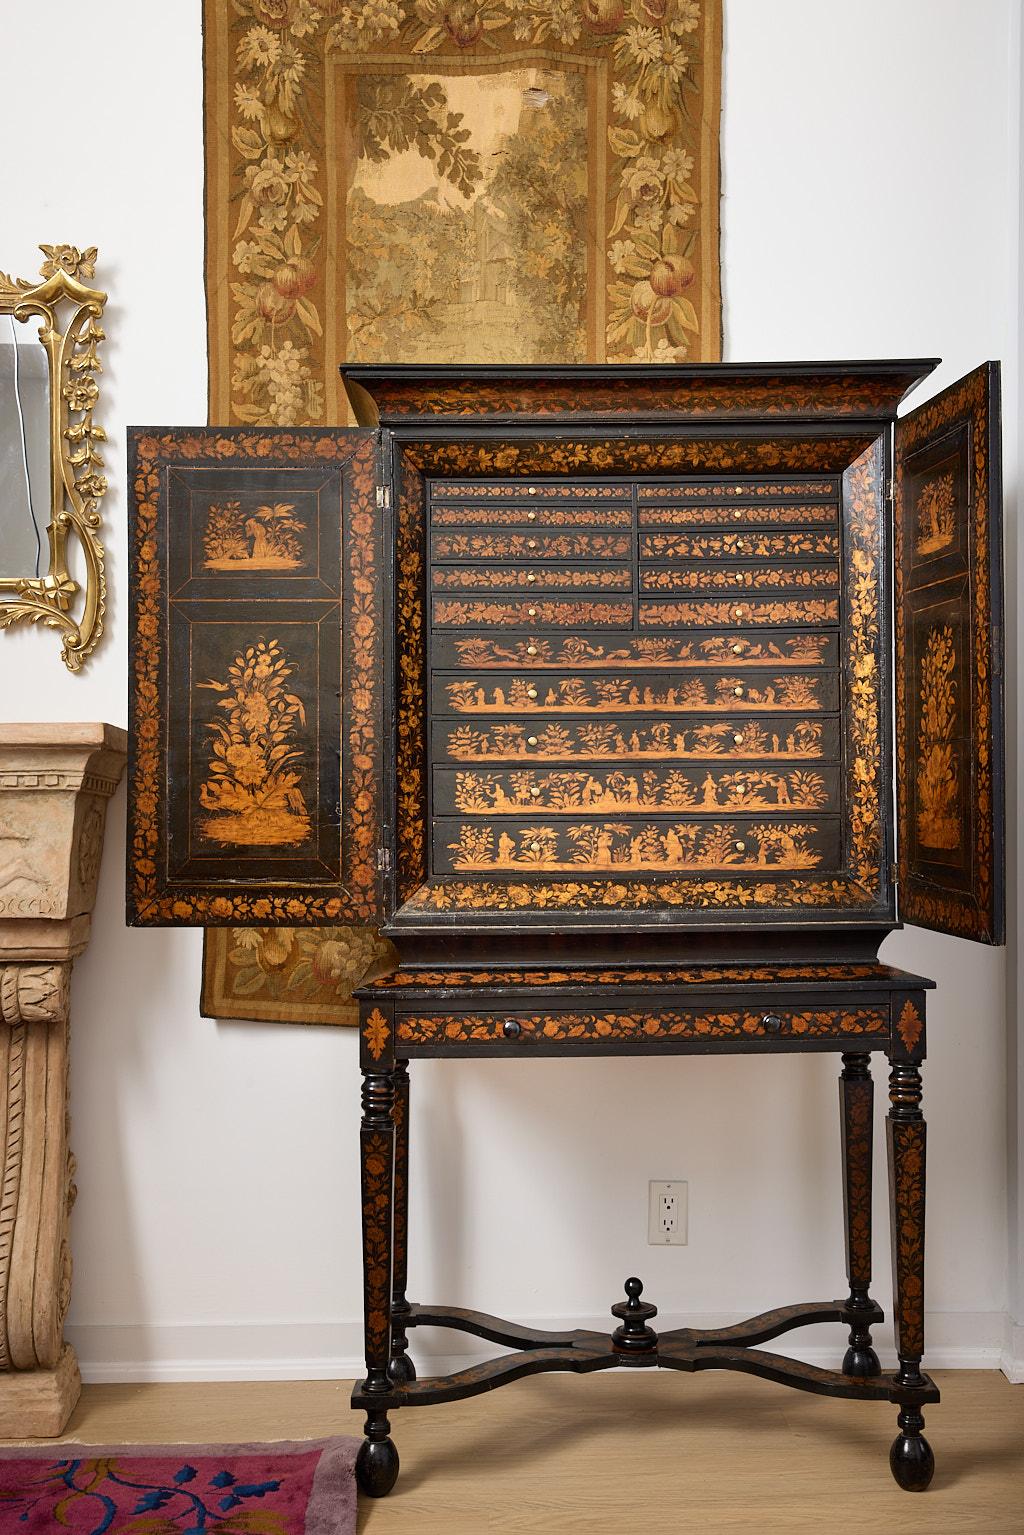 Il s'agit d'un rare cabinet de collectionneur anglais d'époque, vers 1800, en laque, avec une décoration figurative au Penwork. Les doubles portes s'ouvrent pour révéler quinze tiroirs encastrés dont l'intérieur est recouvert d'une doublure rose